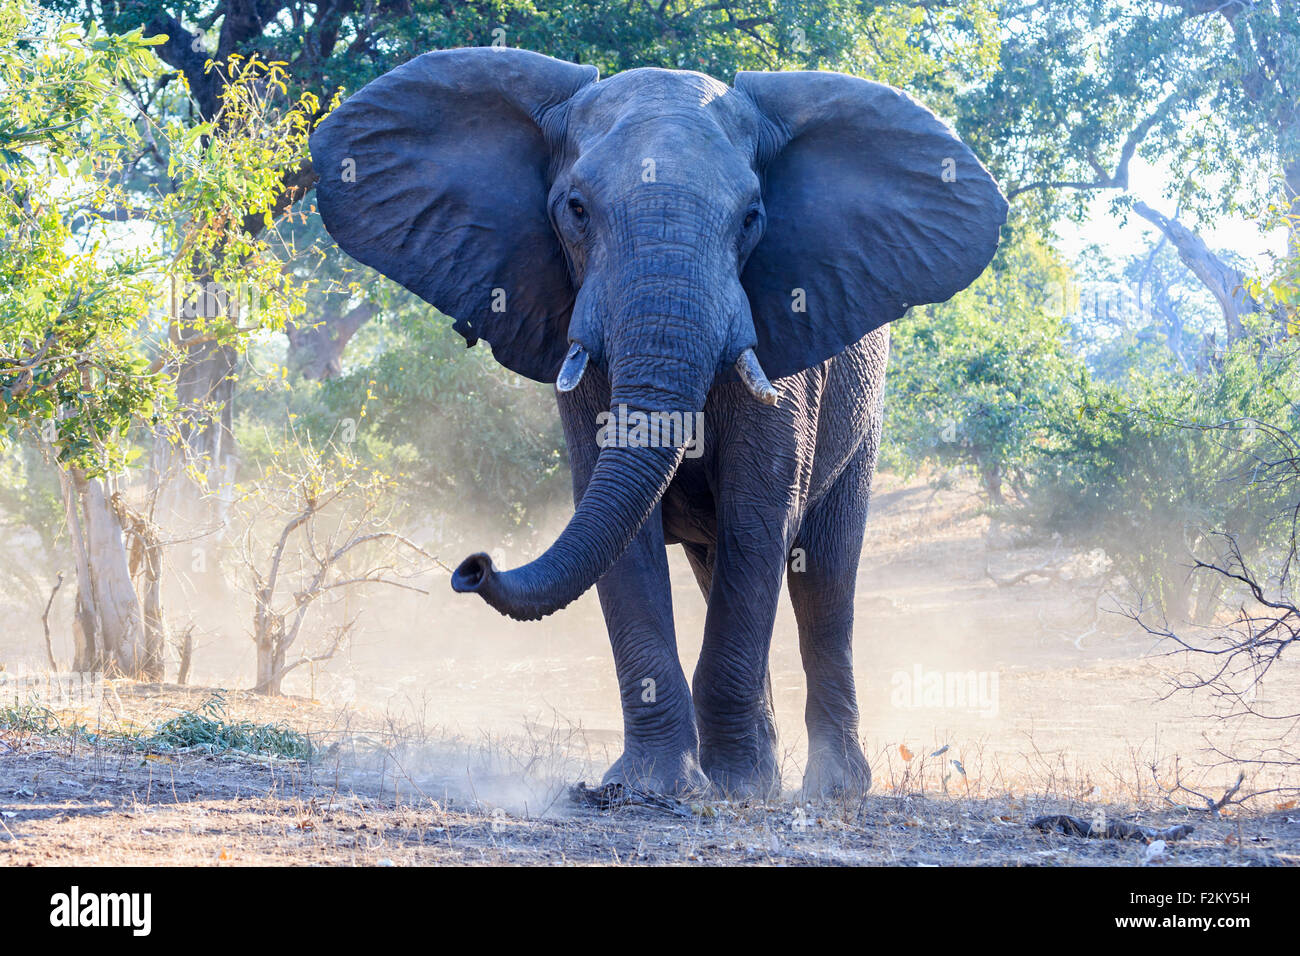 Zimbabwe, Masvingo, Gonarezhou National Park, African elephant Stock Photo